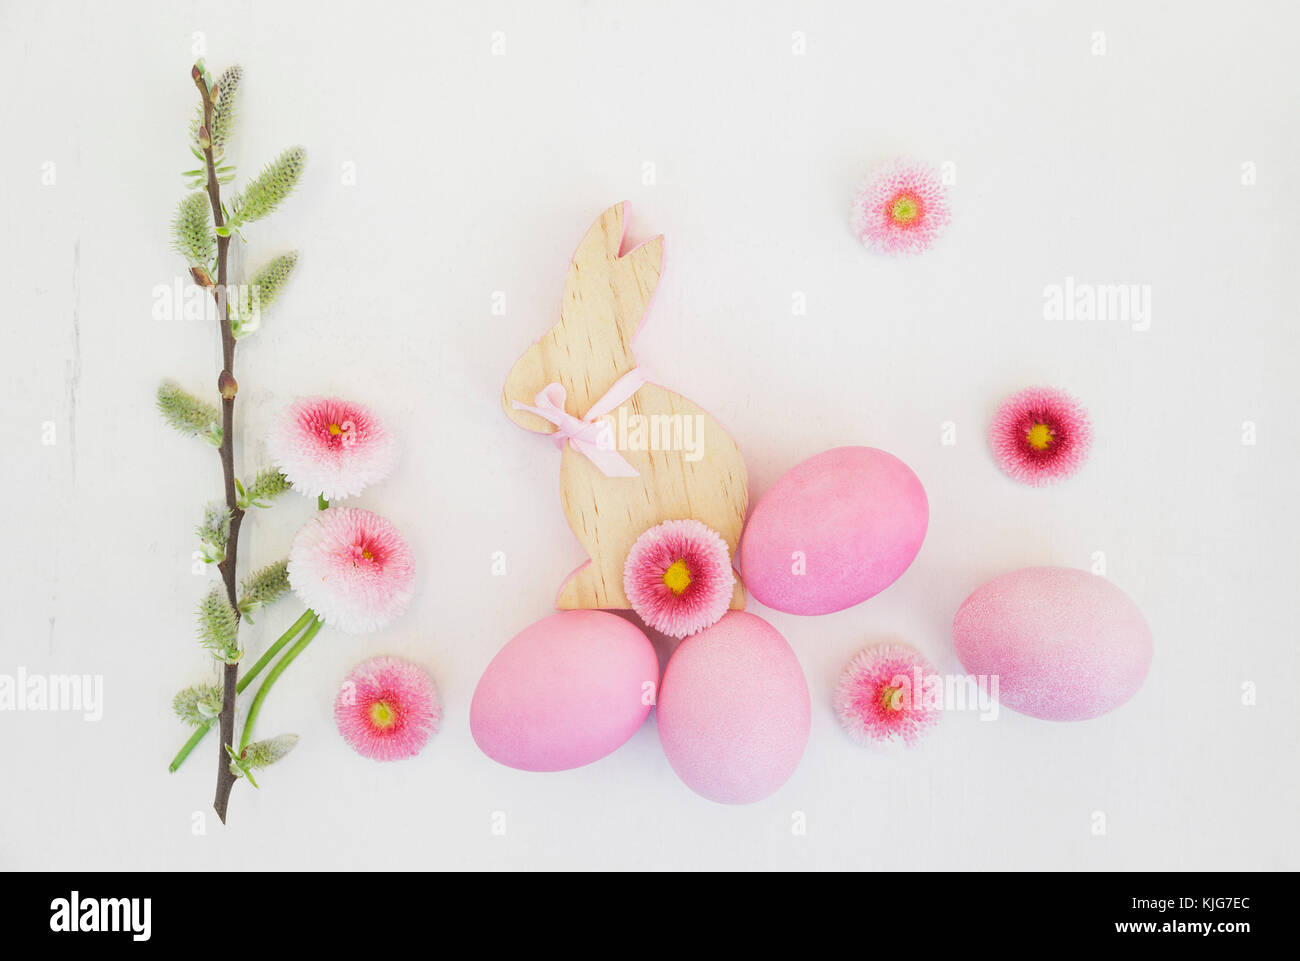 La main de rose l'oeufs de Pâques avec bunny, Daisy et décoration des chatons sur fond de bois Banque D'Images